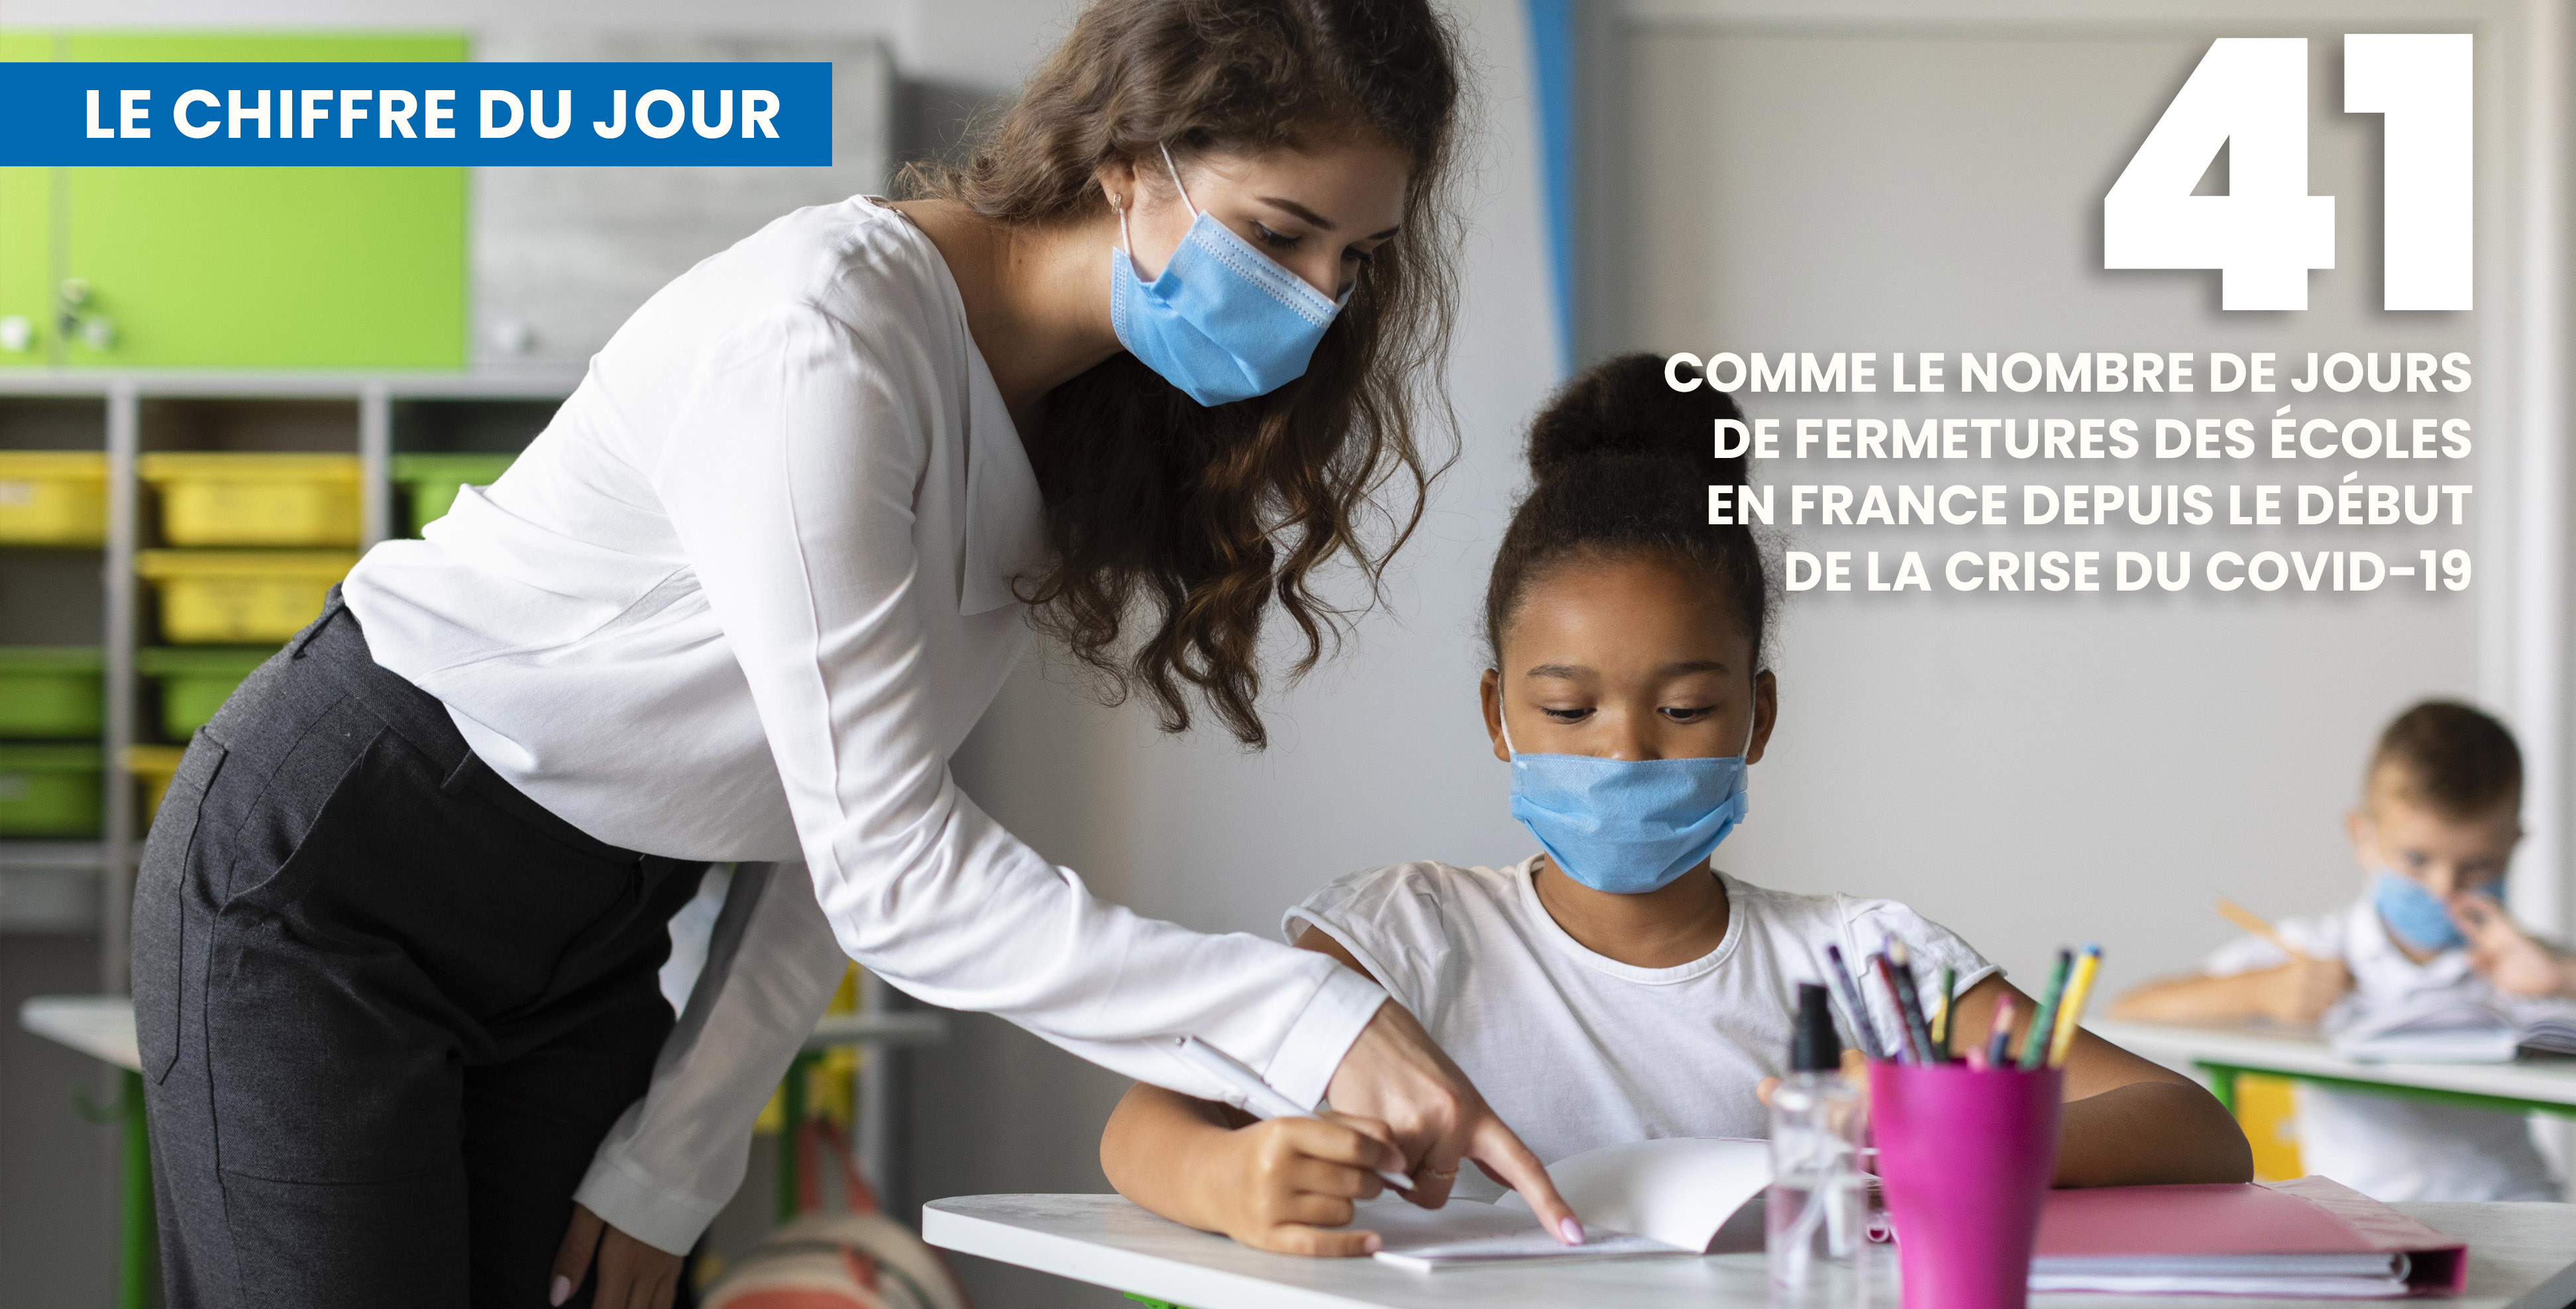 41 jours de fermeture pour les écoles françaises © Freepick